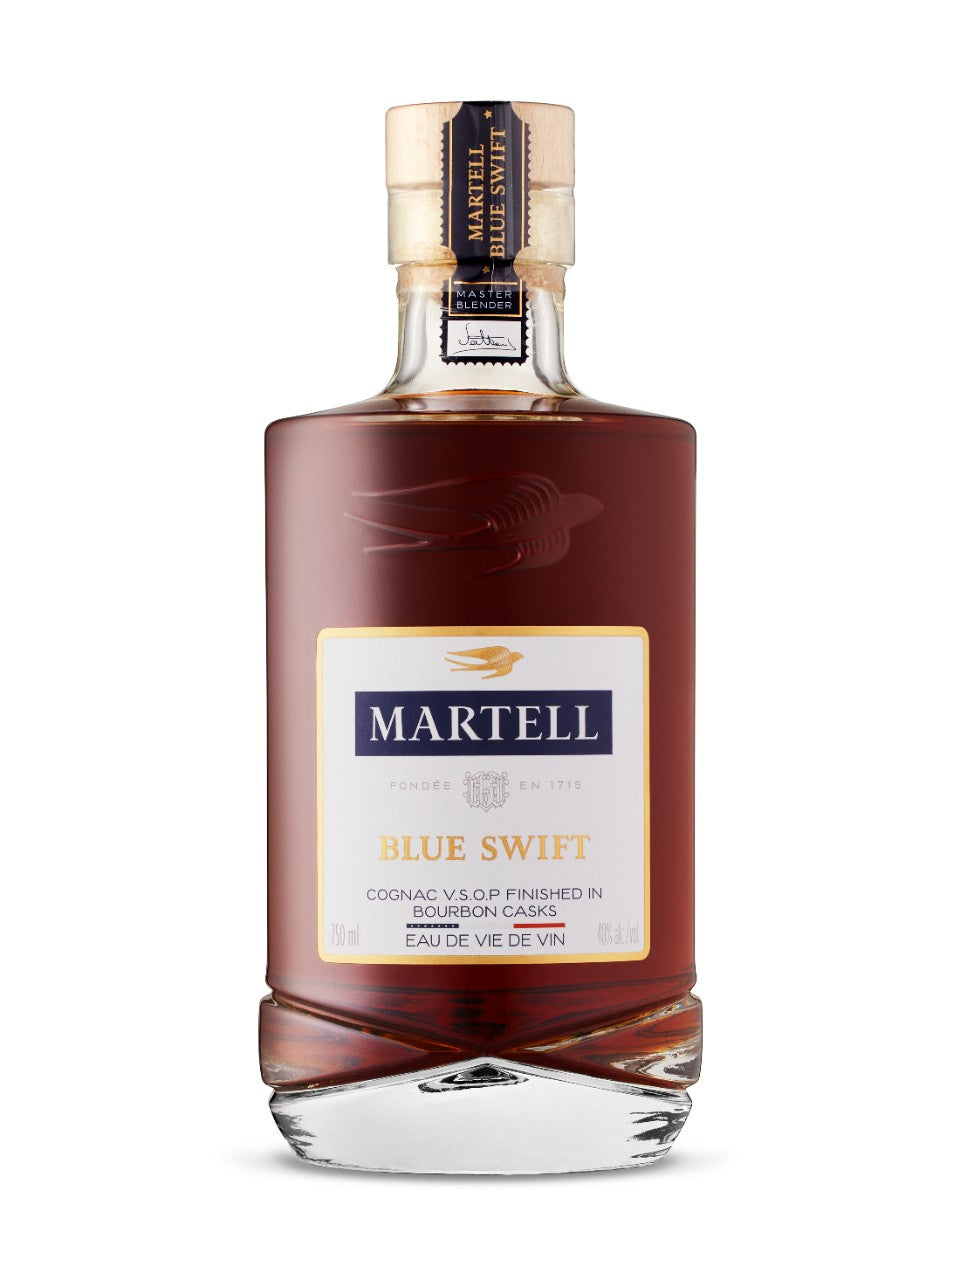 Martell Blue Swift Cognac  750 mL bottle